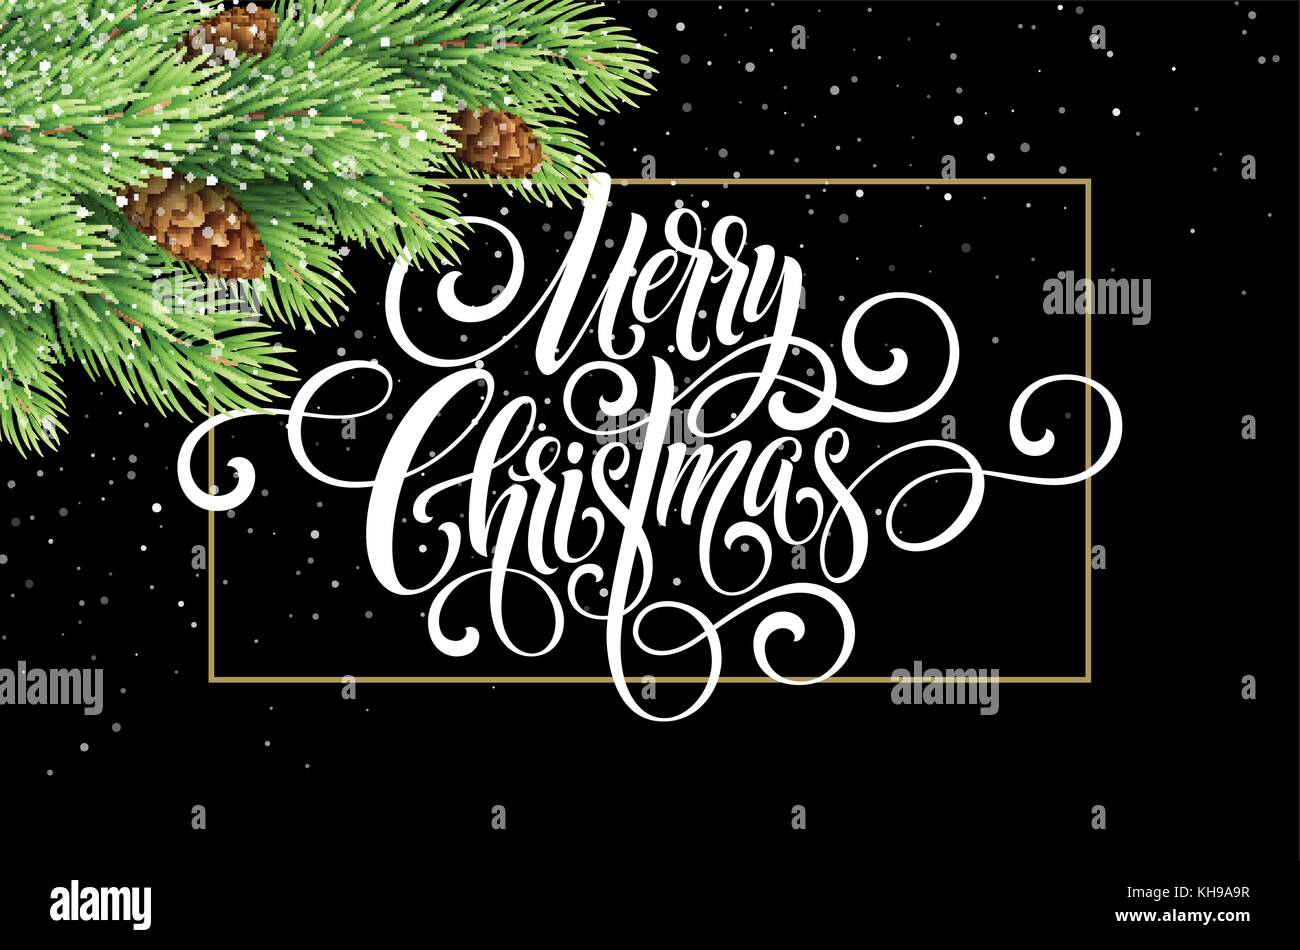 Grußkarte mit weihnachtsbaum und kalligraphischen Seufzer Frohe Weihnachten. Vektorgrafik Urlaub Stock Vektor